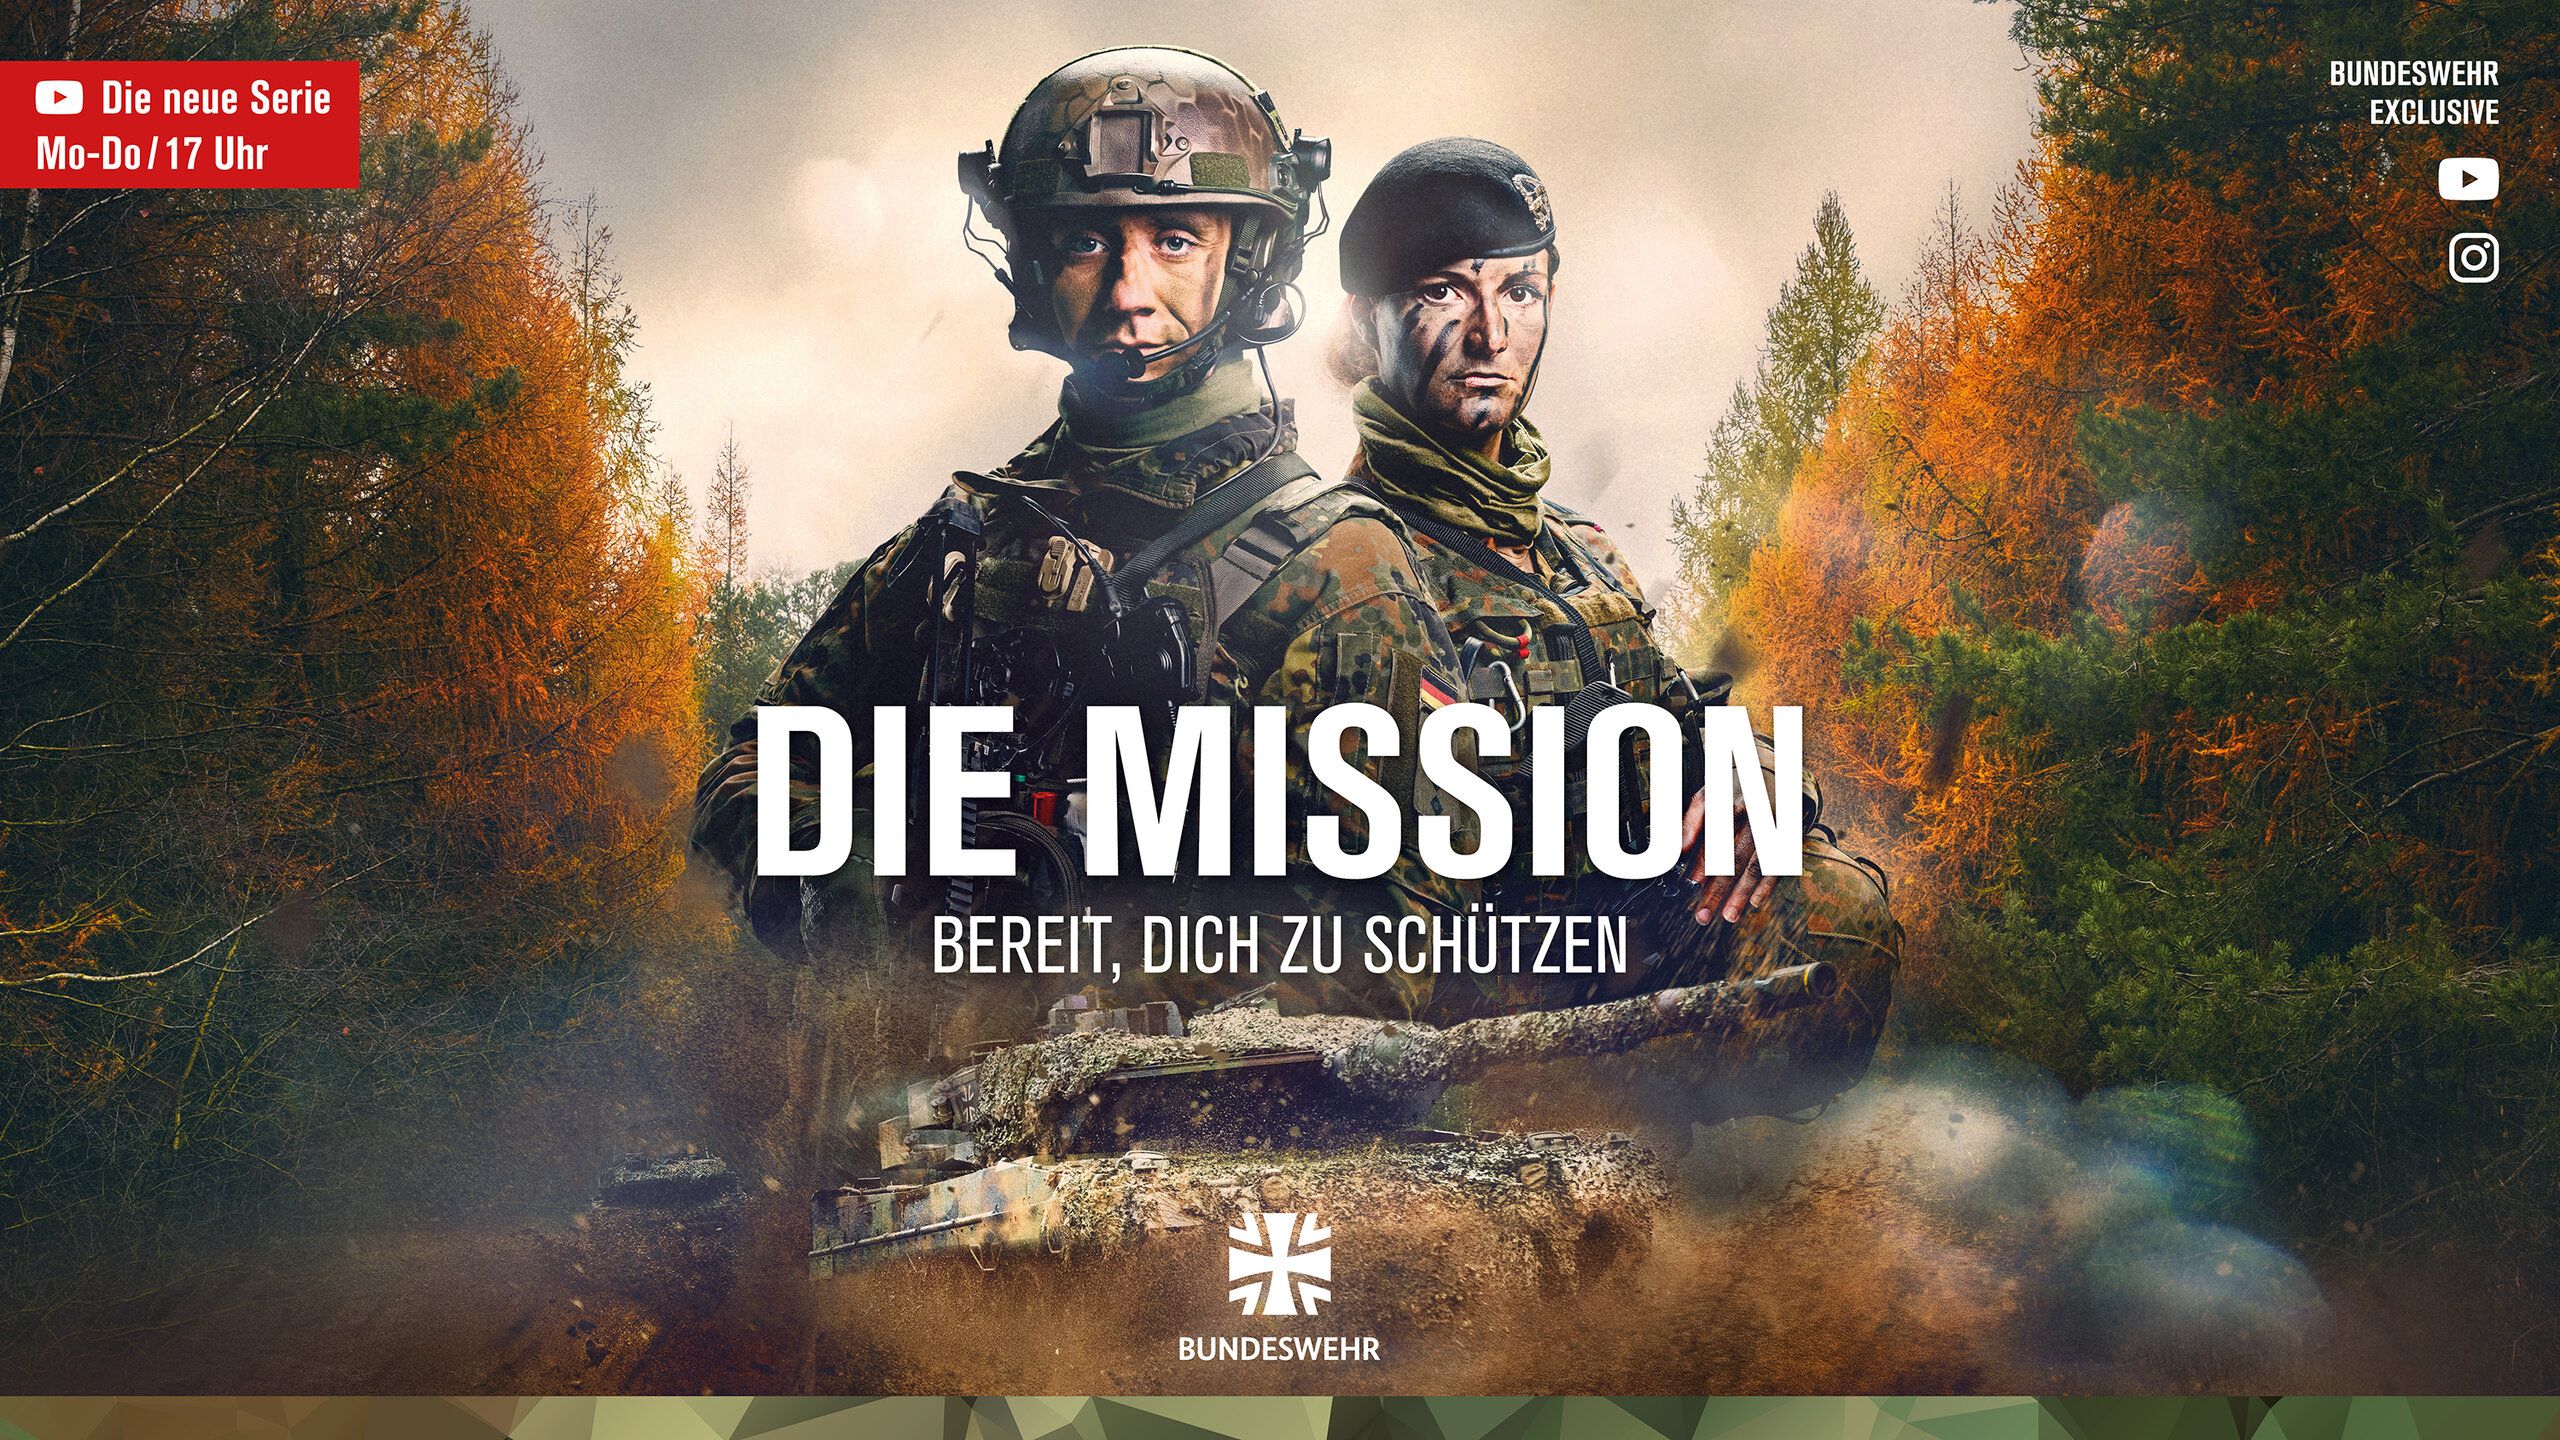 Kampagnenmotiv der neuen YouTube-Serie der Bundeswehr "Die Mission